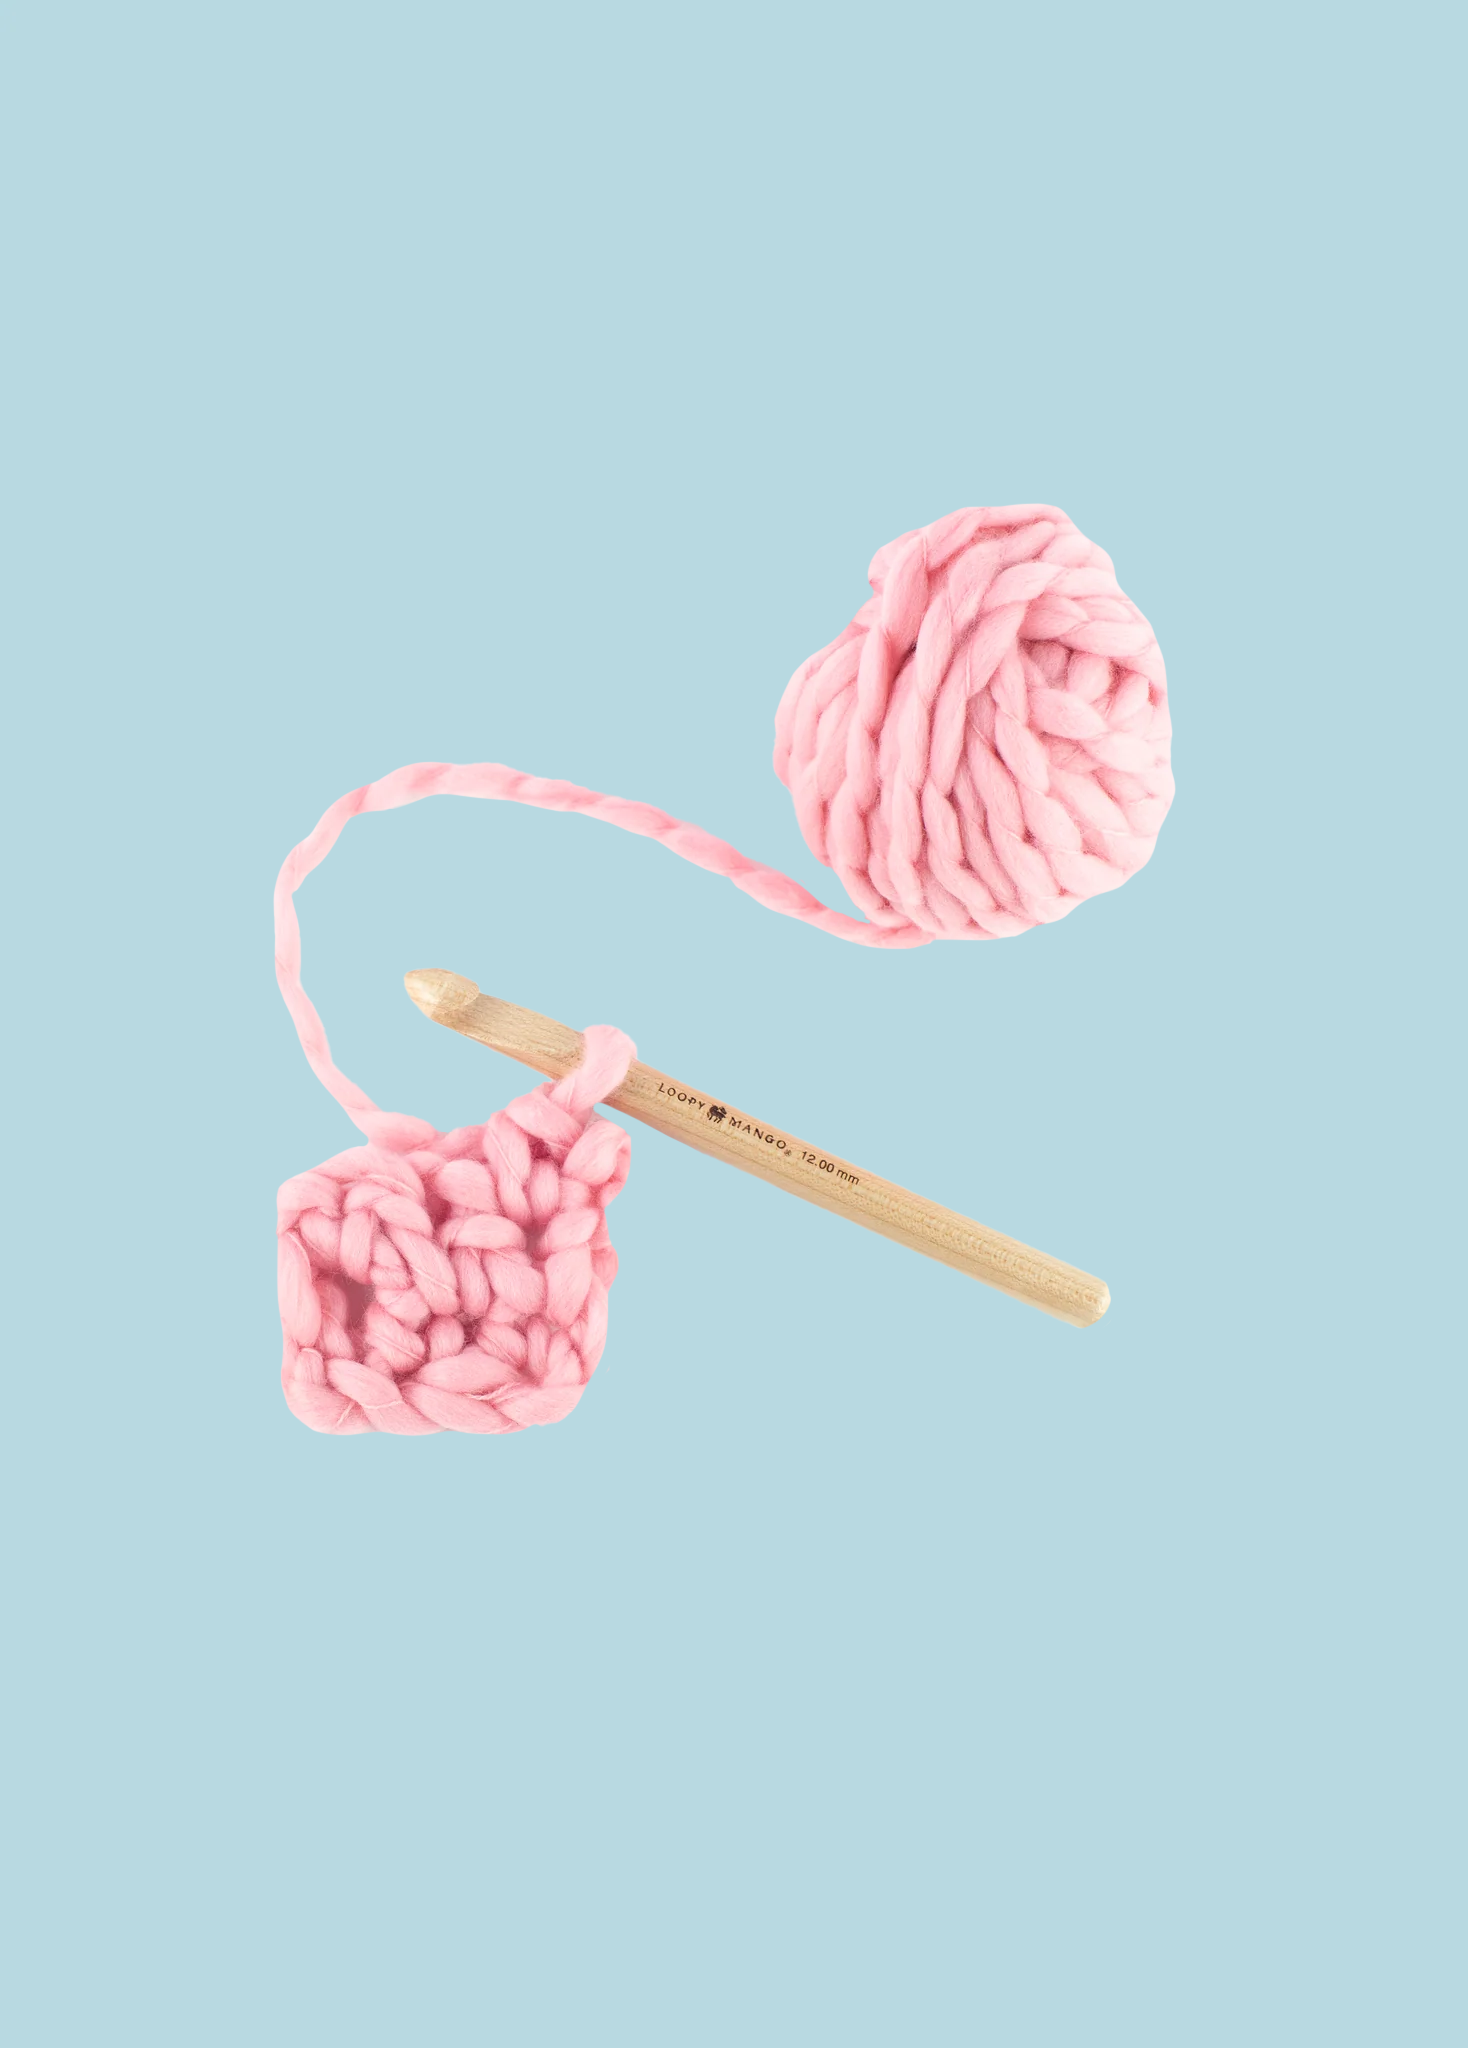 SALE-50% OFF 15 mm or 19 mm Crochet Hook